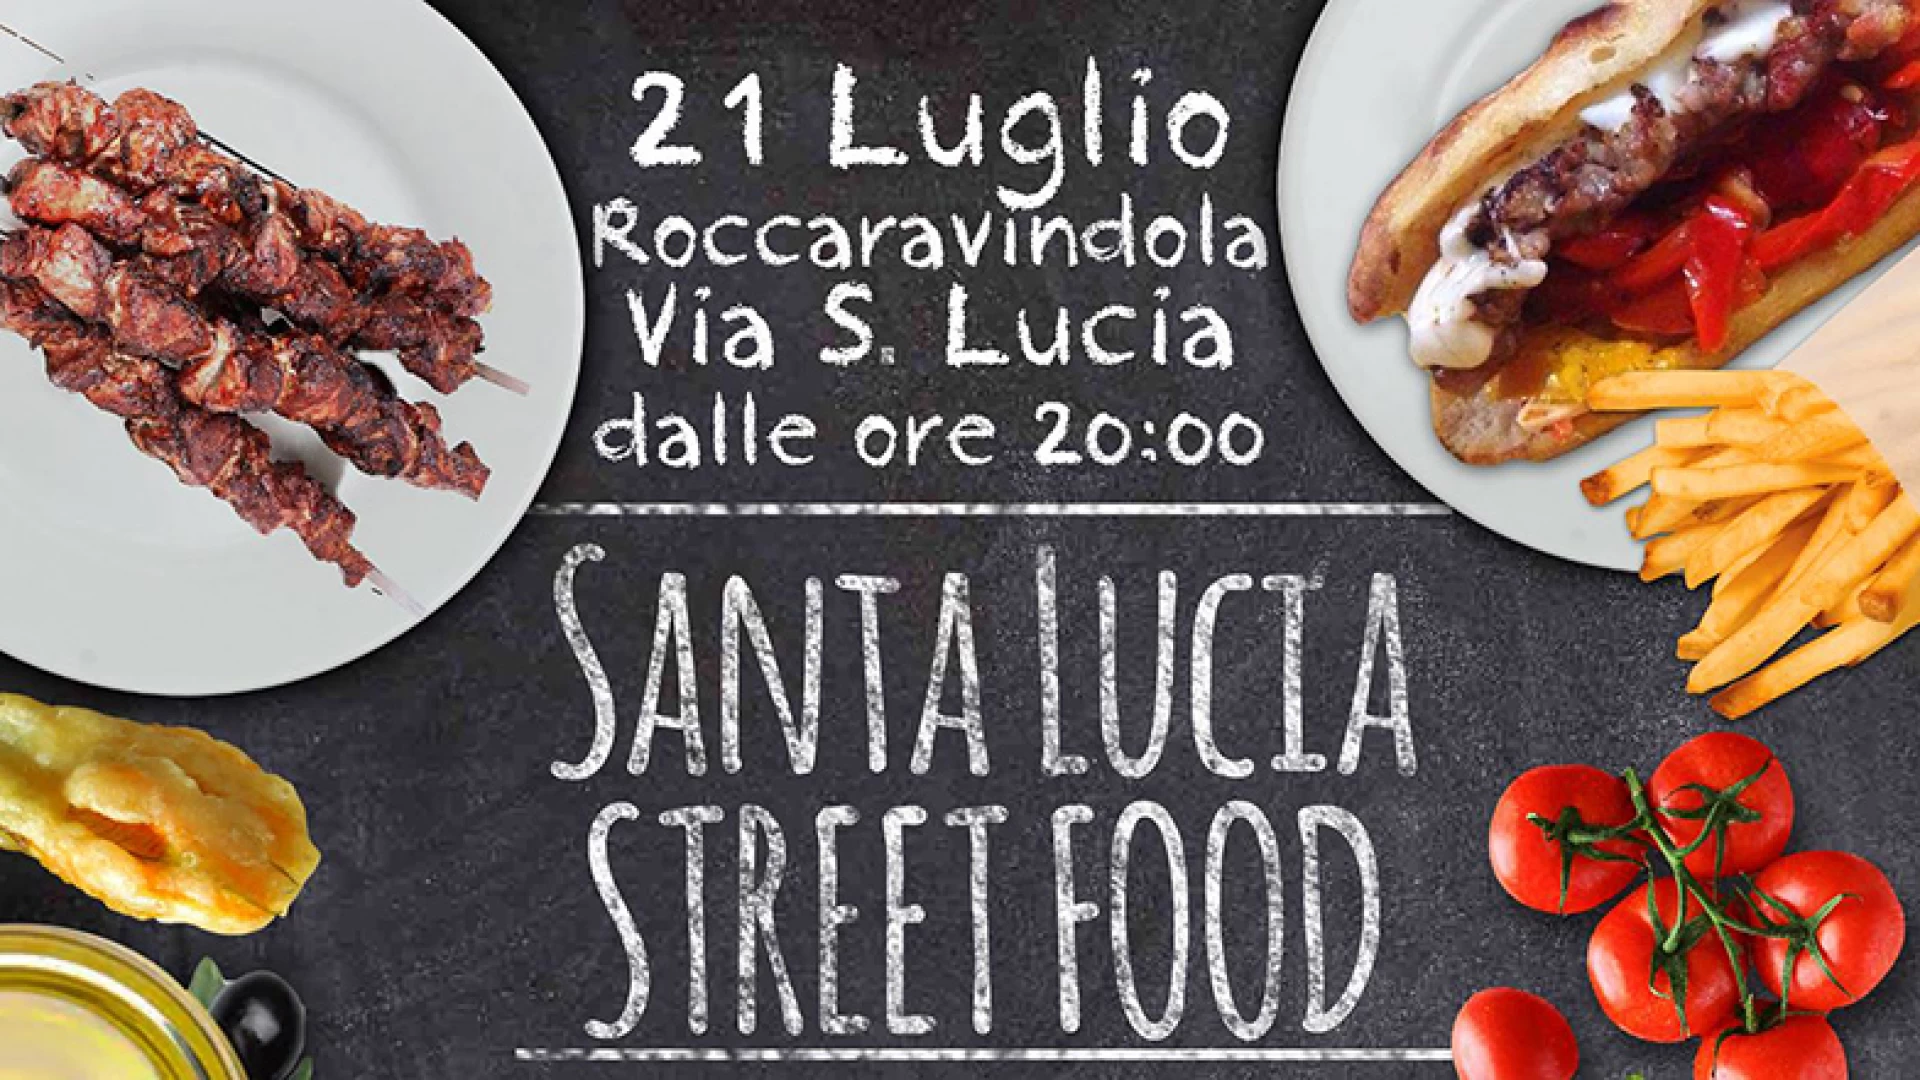 Roccaravindola: sabato 21 luglio appuntamento con Santa Lucia Steet Food.